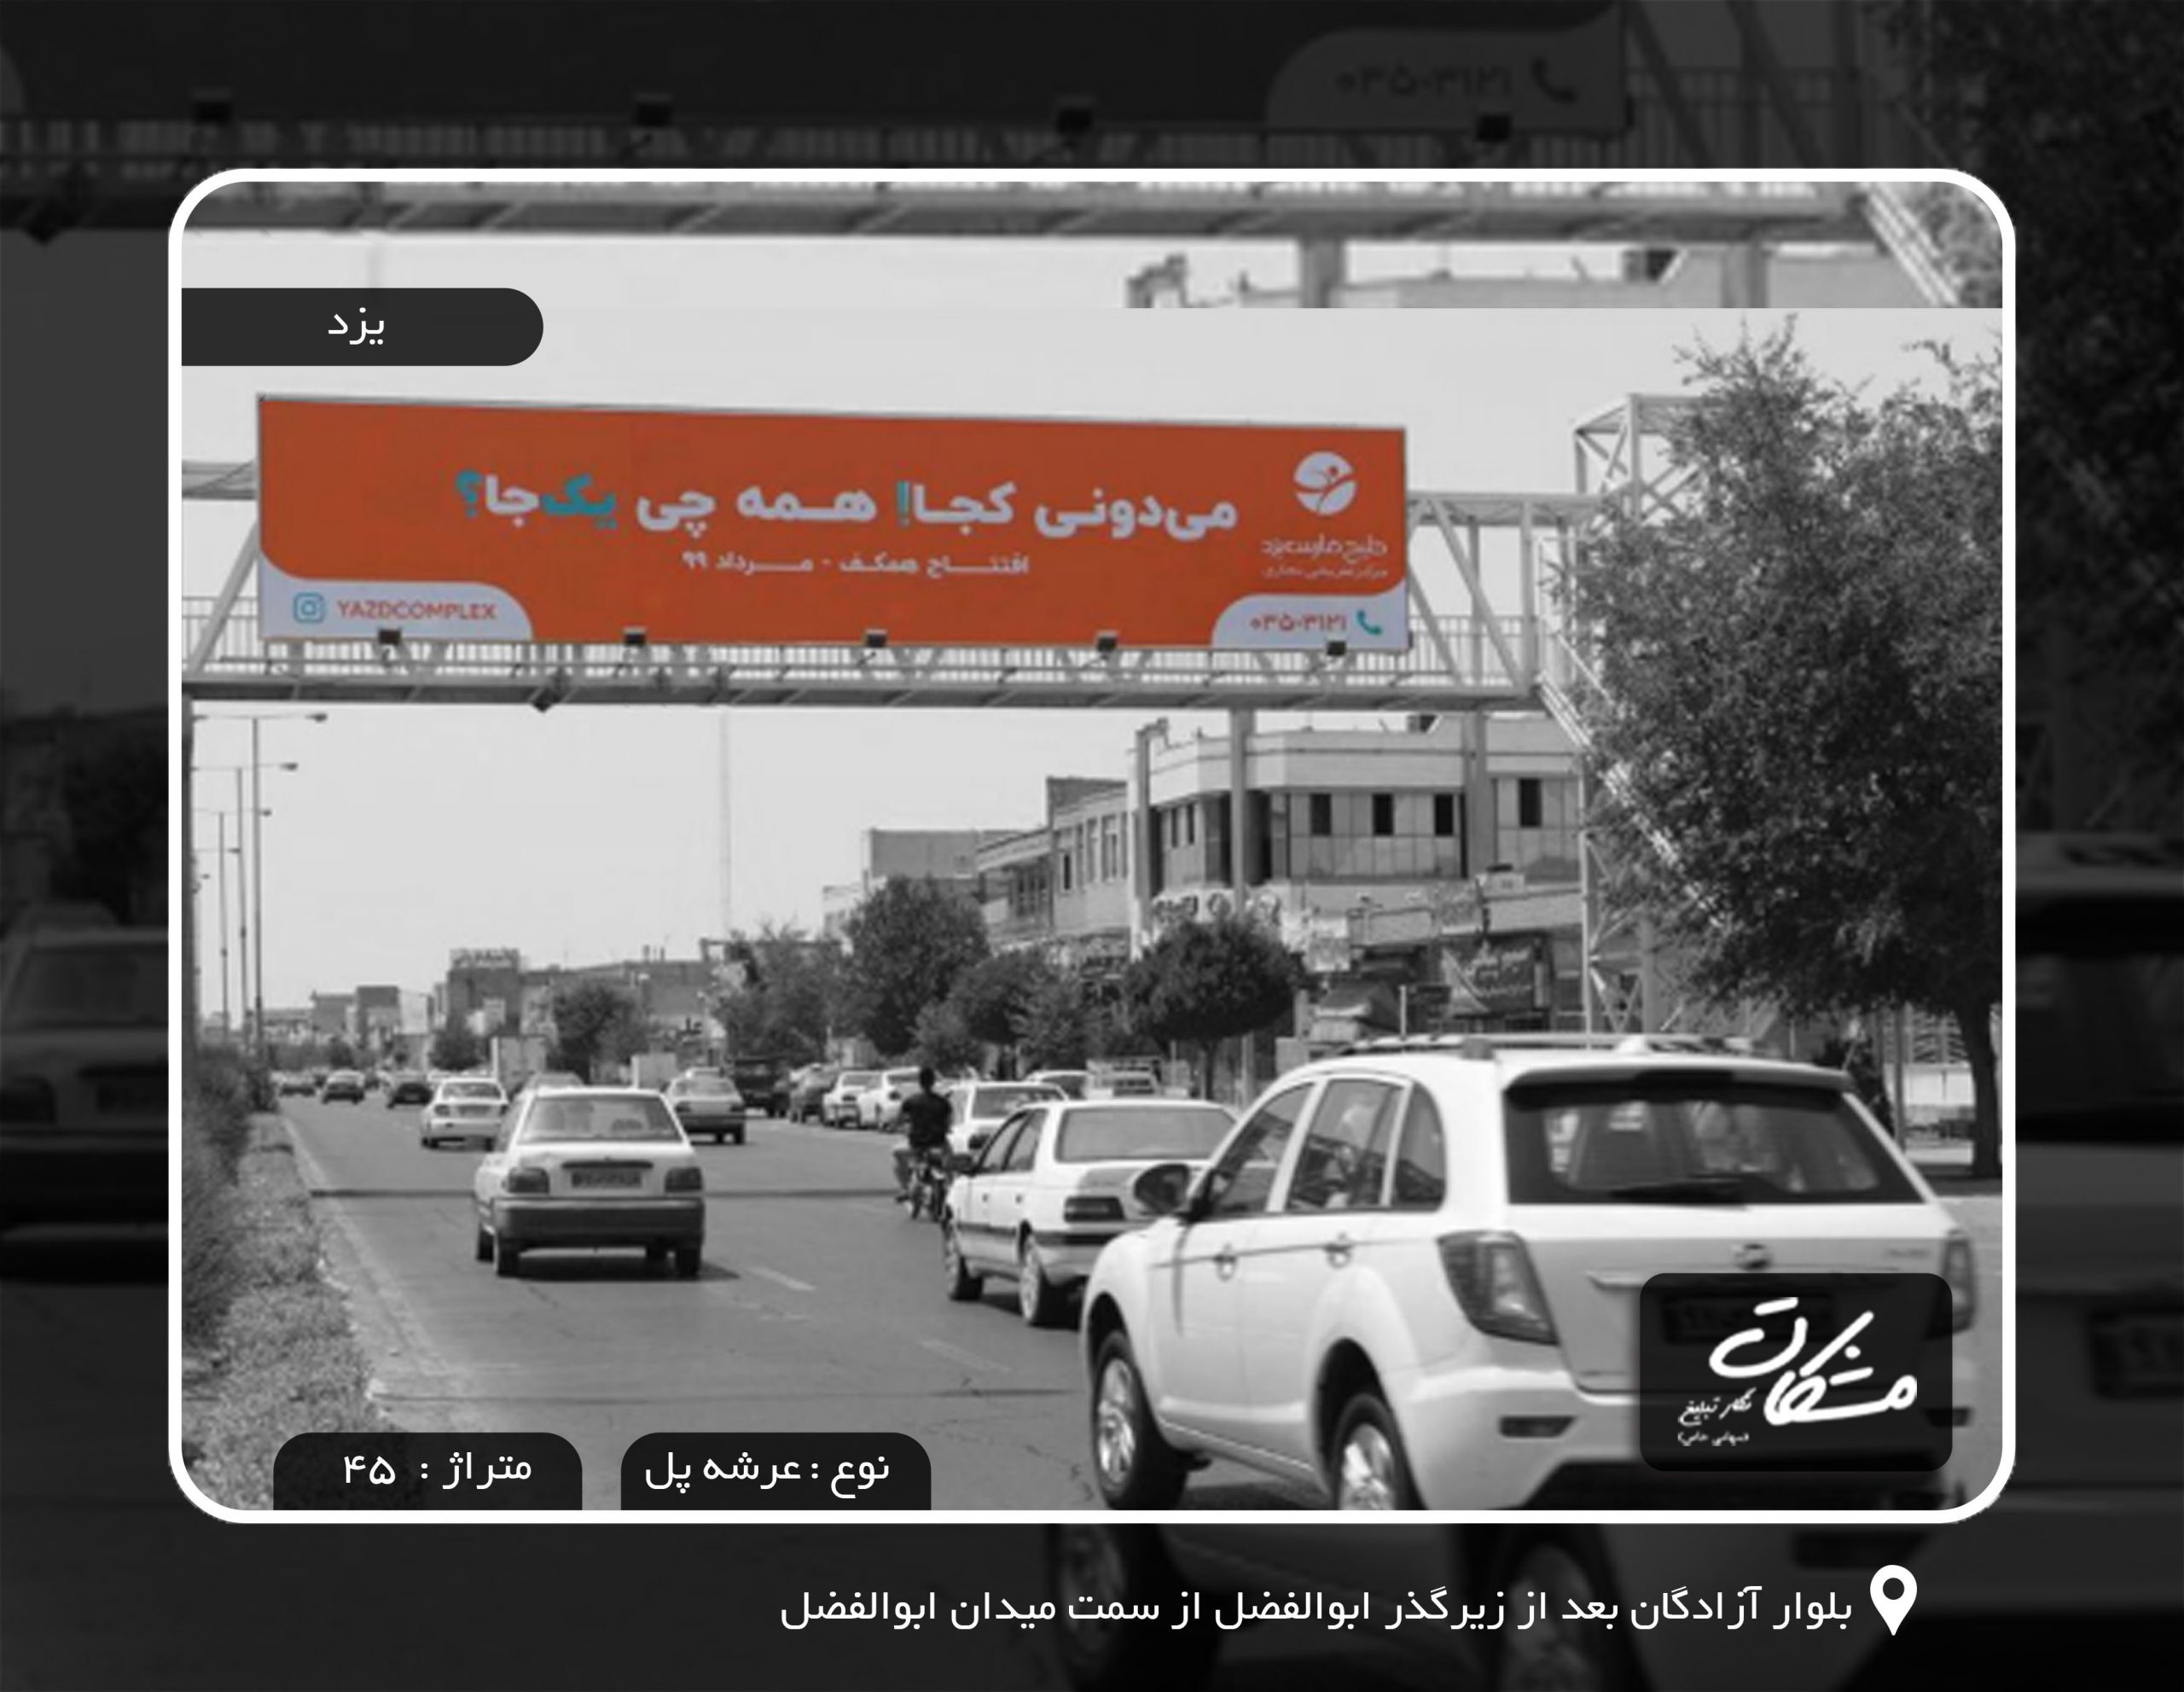 بیلبورد تبلیغاتی یزد بلوار آزادگان بعد از زیرگذر ابوالفضل از سمت میدان ابوالفضل